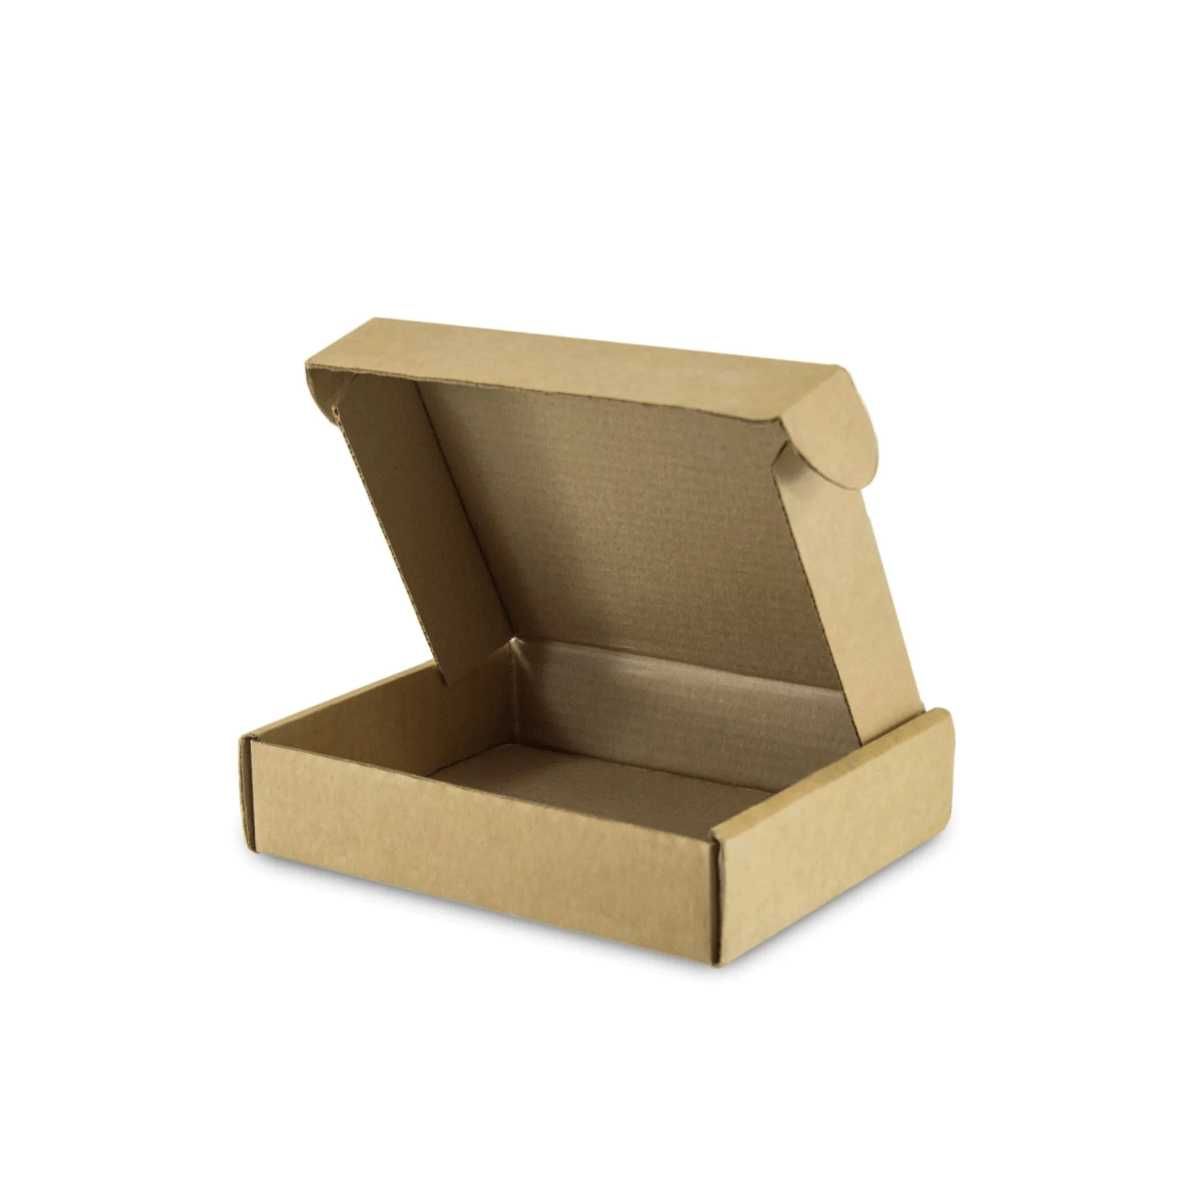 гофра картон, Производство высококачественных гофро коробок Коробка